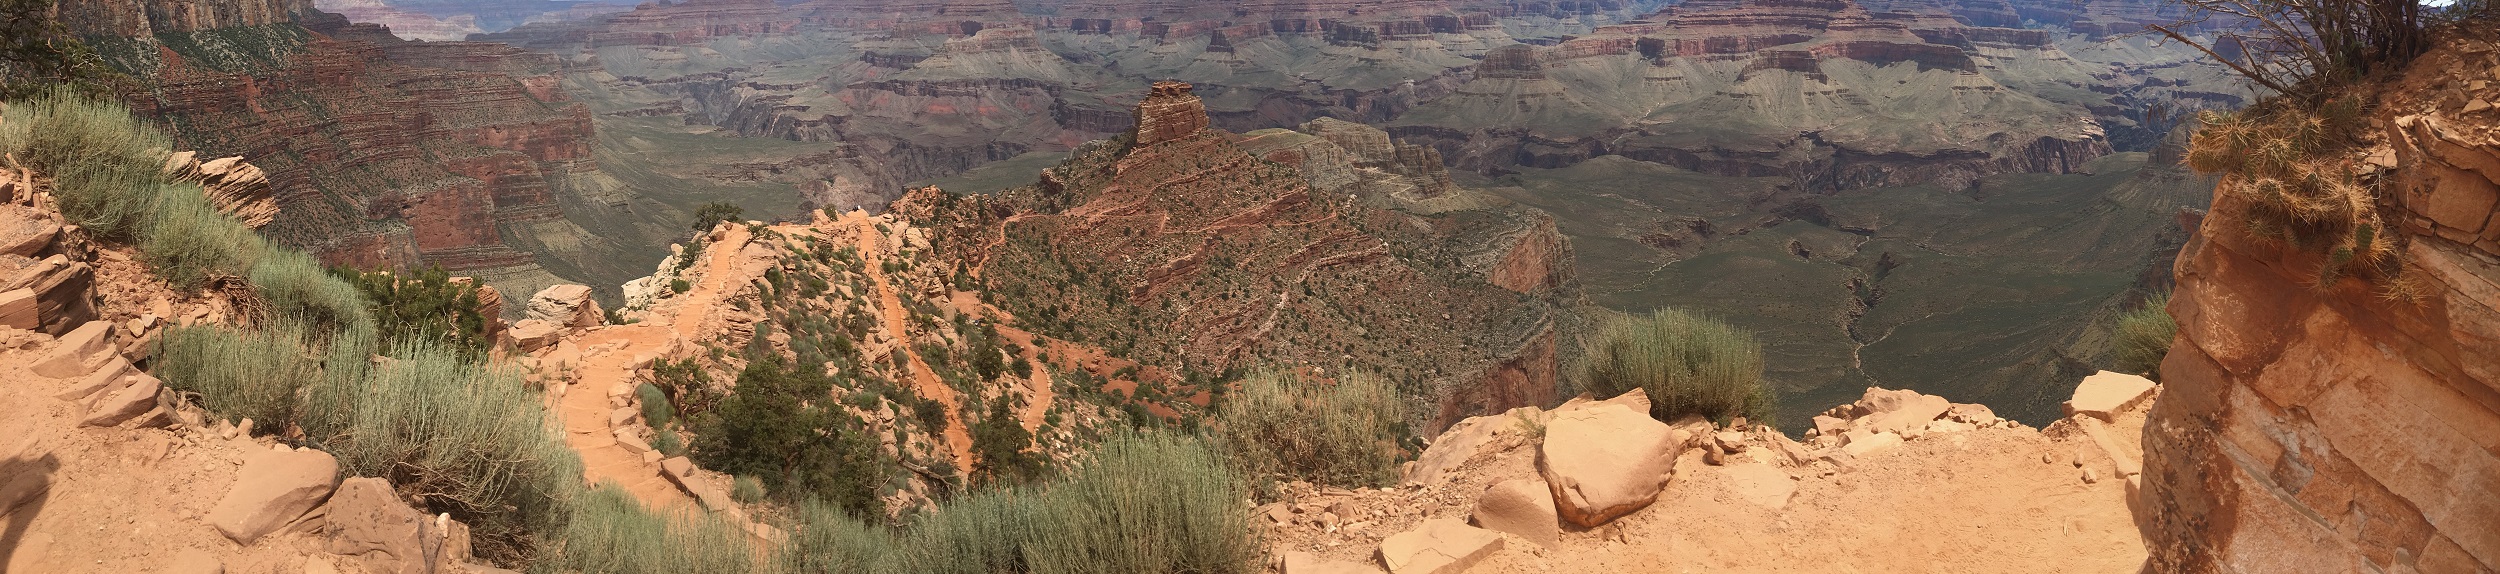 South Kaibab Trail Hike Grand Canyon